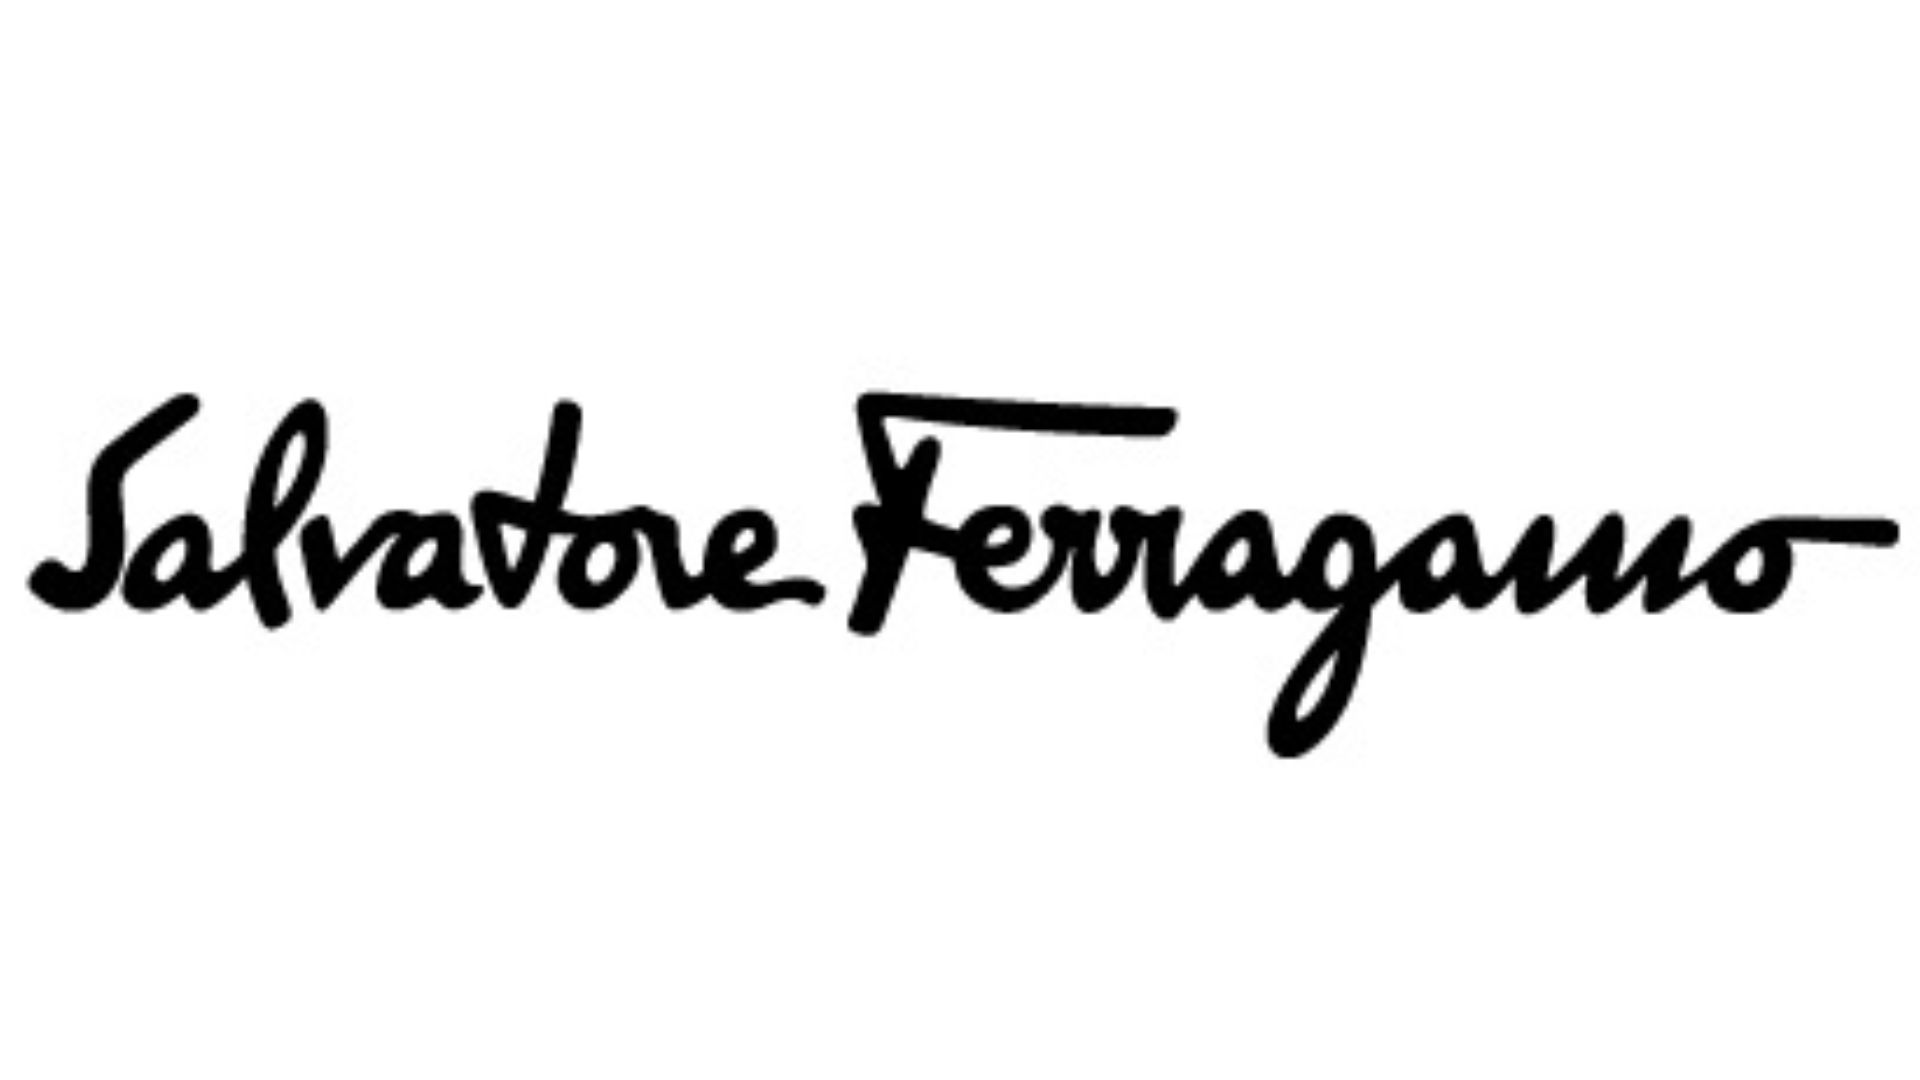 Рассматриваем обновленный логотип Ferragamo вблизи